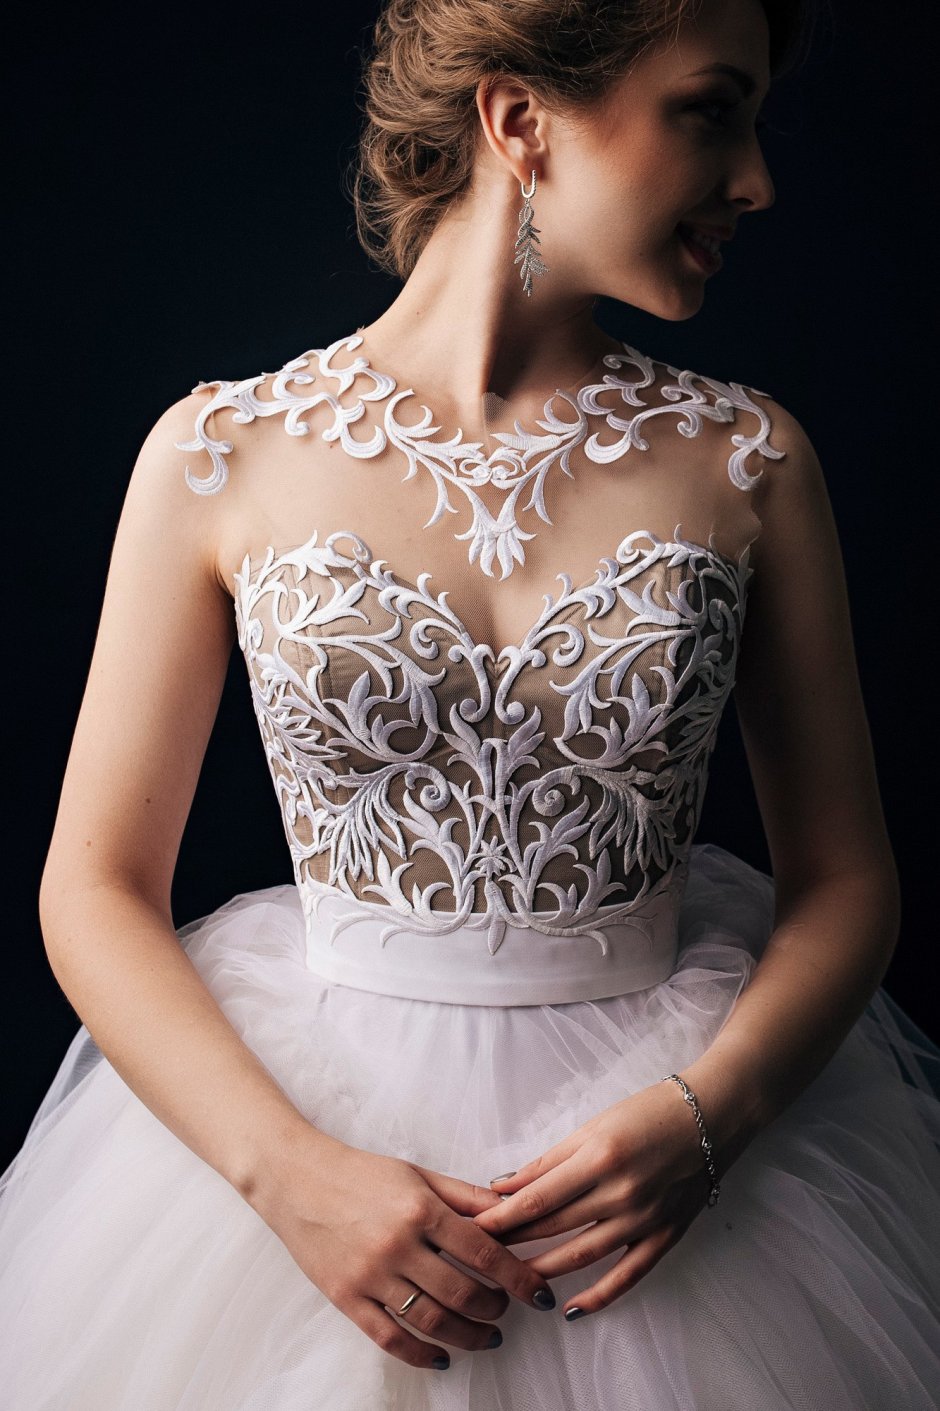 Свадебное платье с корсетом